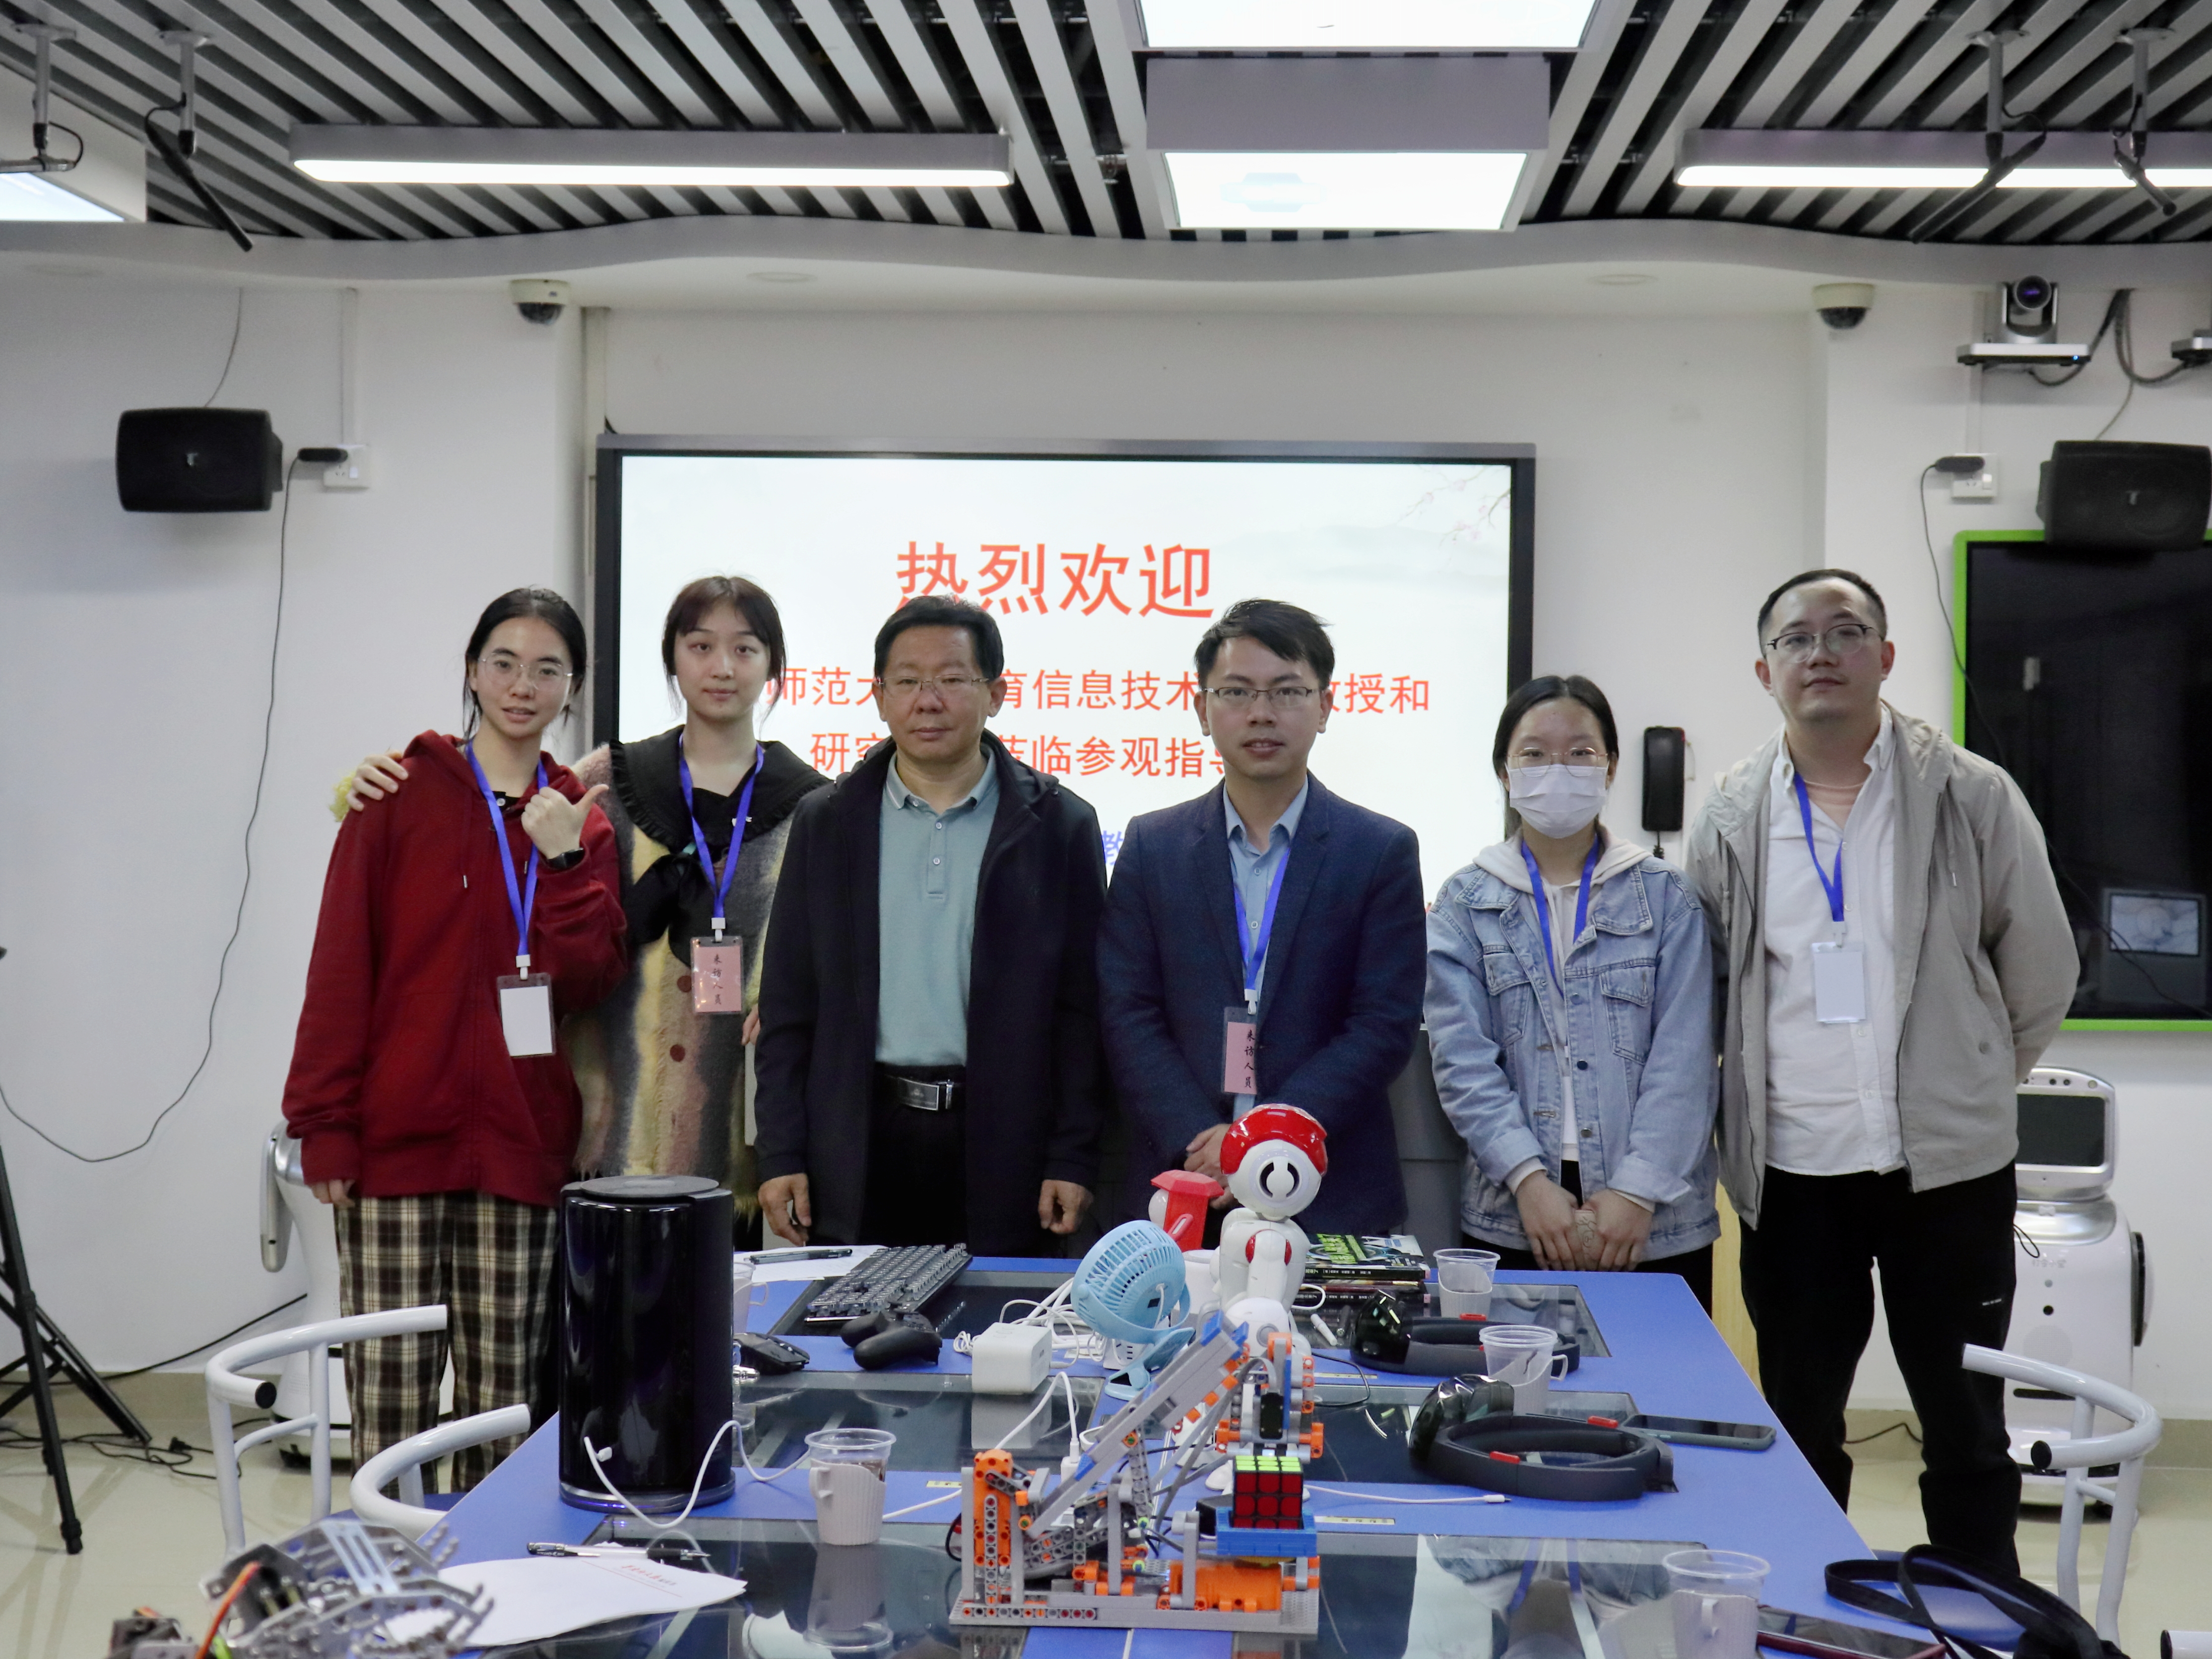 林晓凡老师及其团队成员赴广州市电化教育馆参观与调研